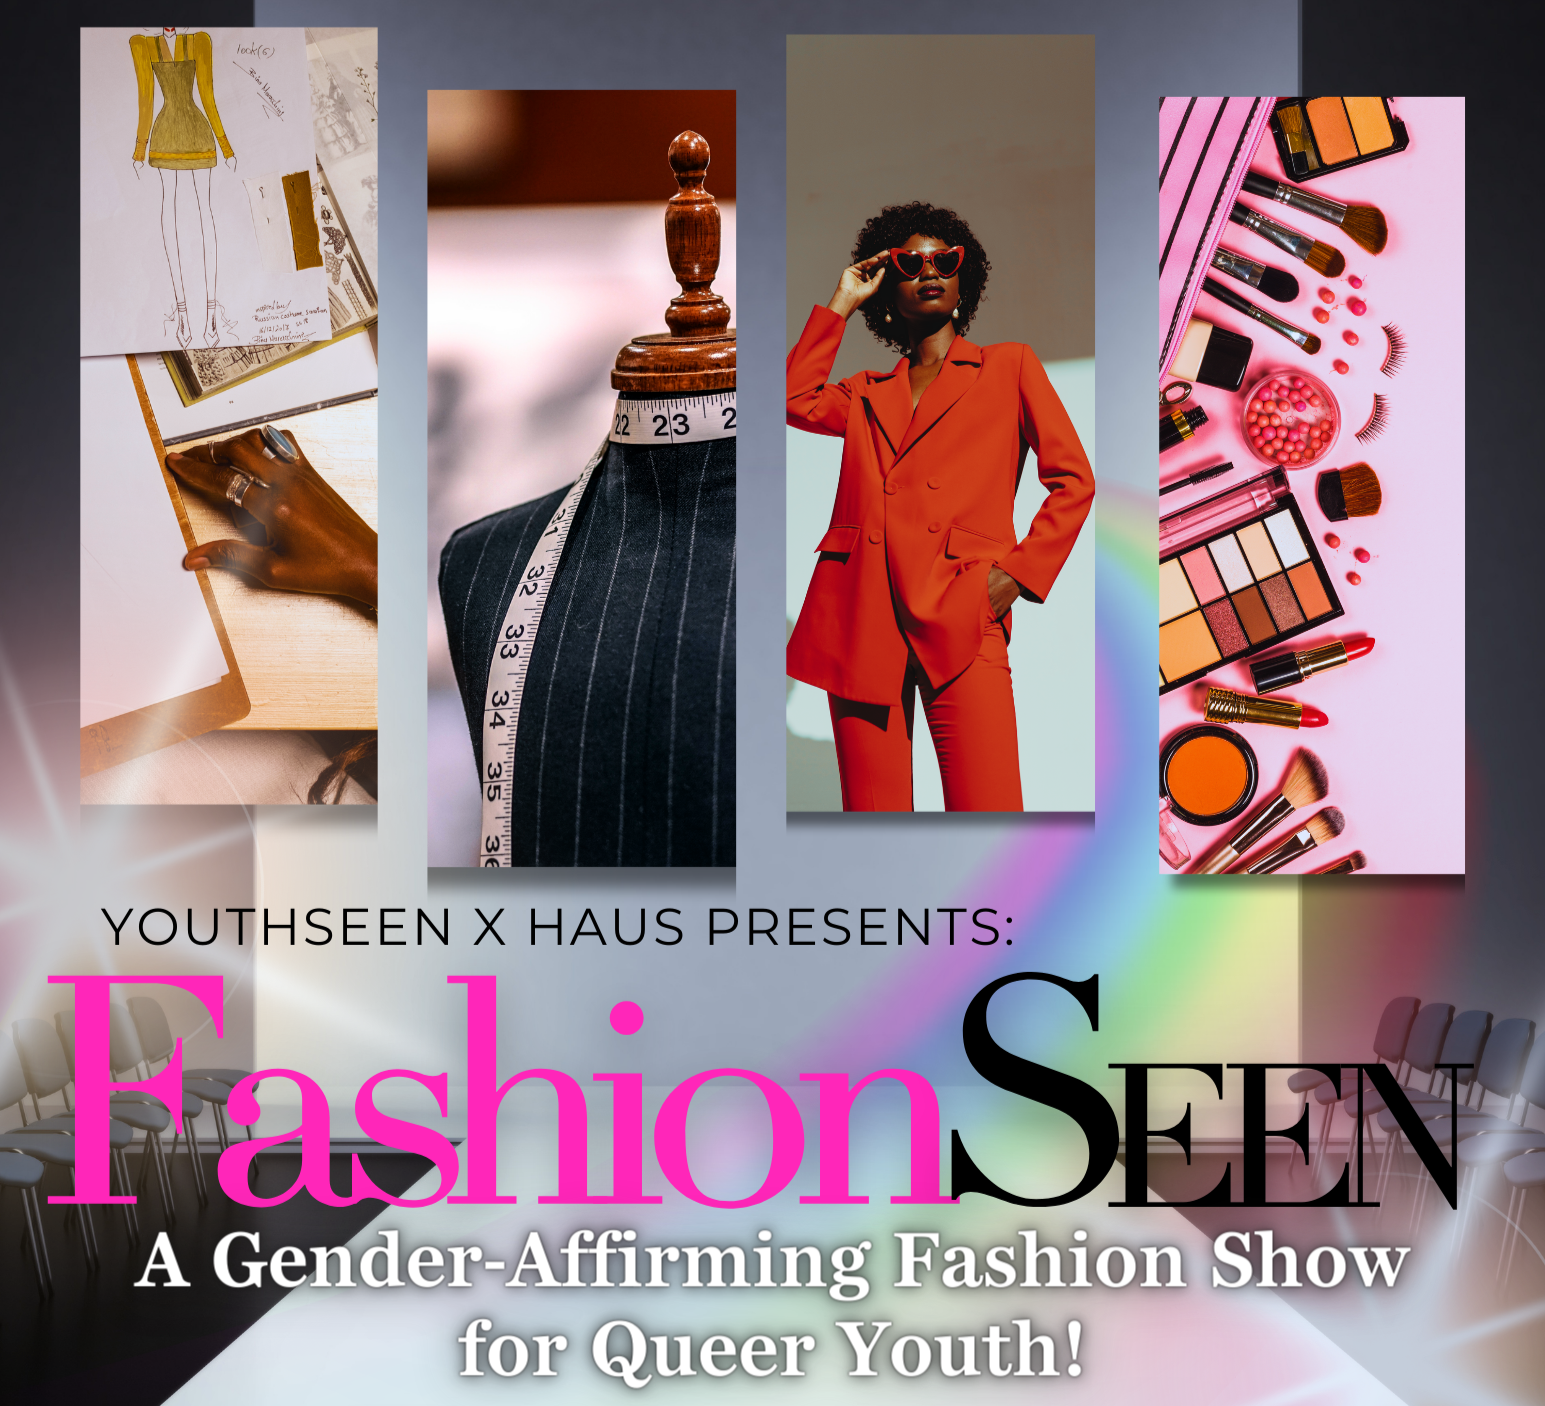 FashionSeen: Próximo desfile de moda para jóvenes homosexuales